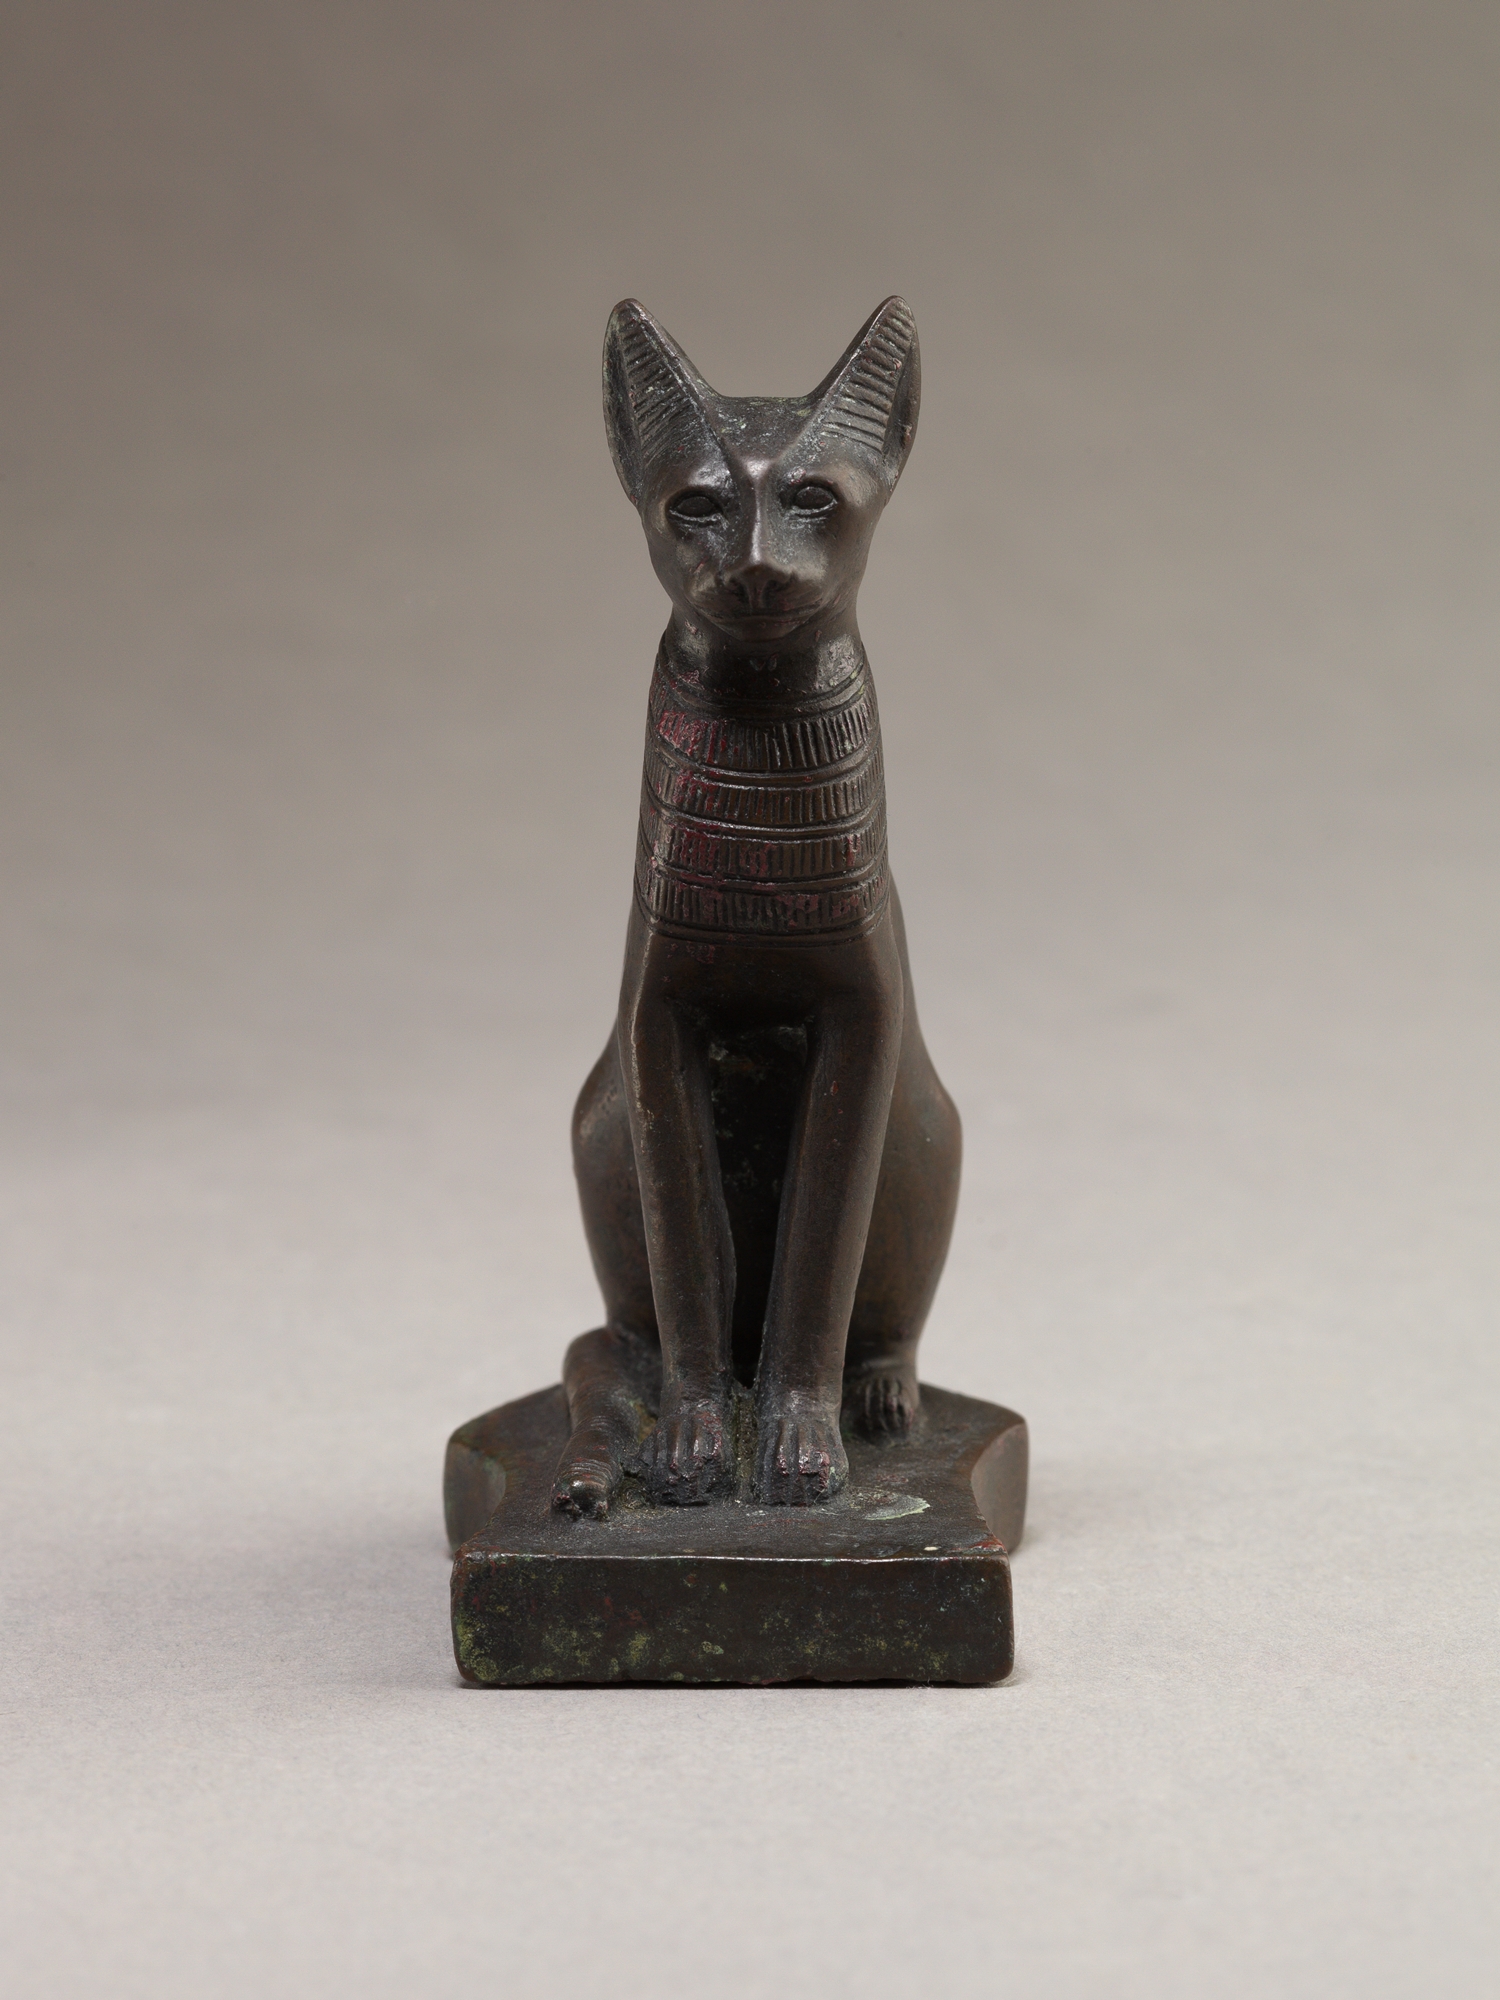 Statuette of a cat, Late Period–Ptolemaic Period